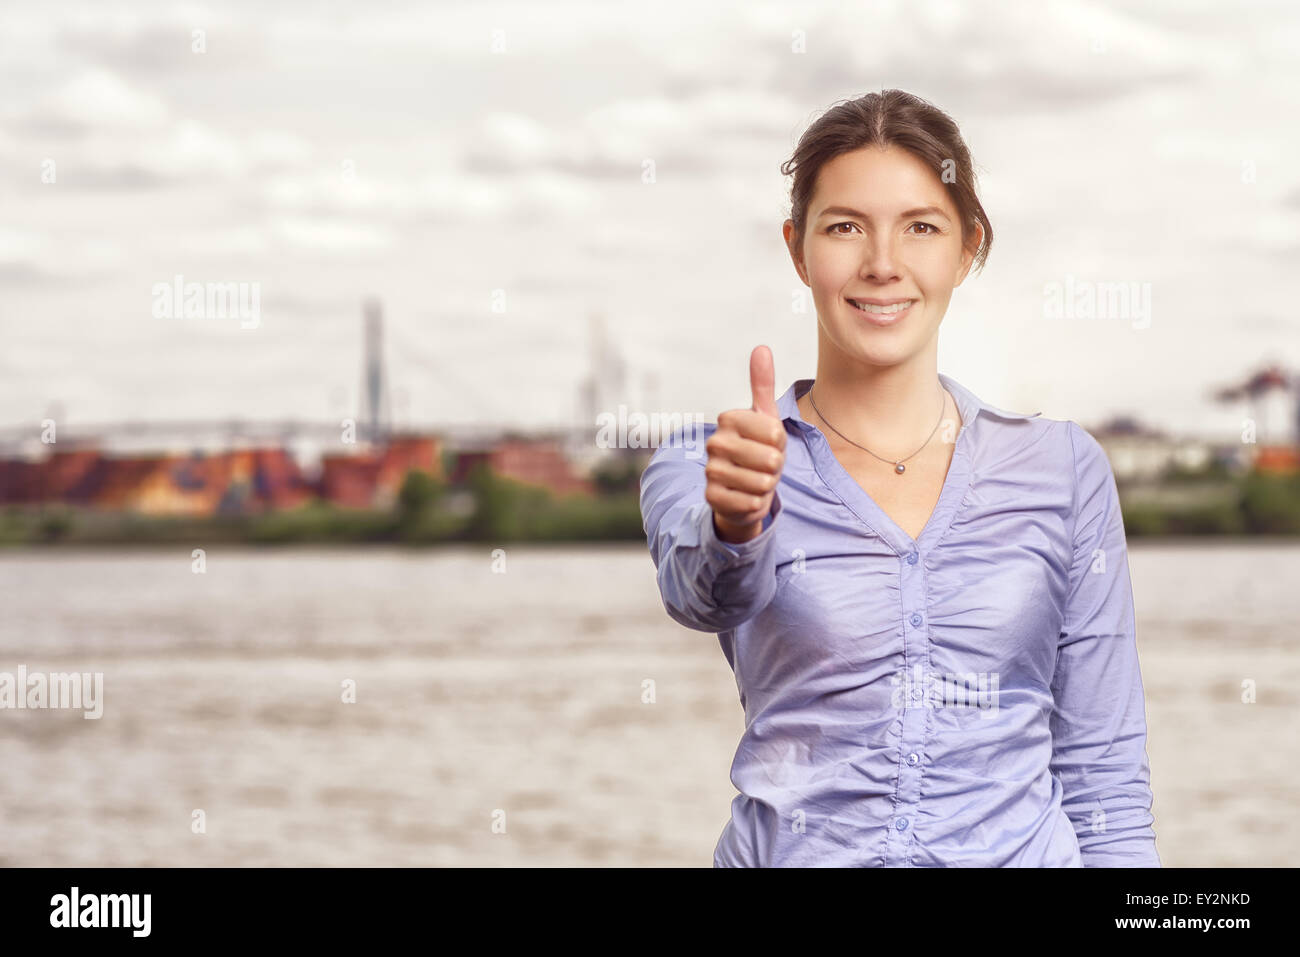 Sorridenti donna attraente dando un pollice in alto gesto di successo e approvazione, corpo superiore ritratto di fronte a un ambiente urbano rive Foto Stock